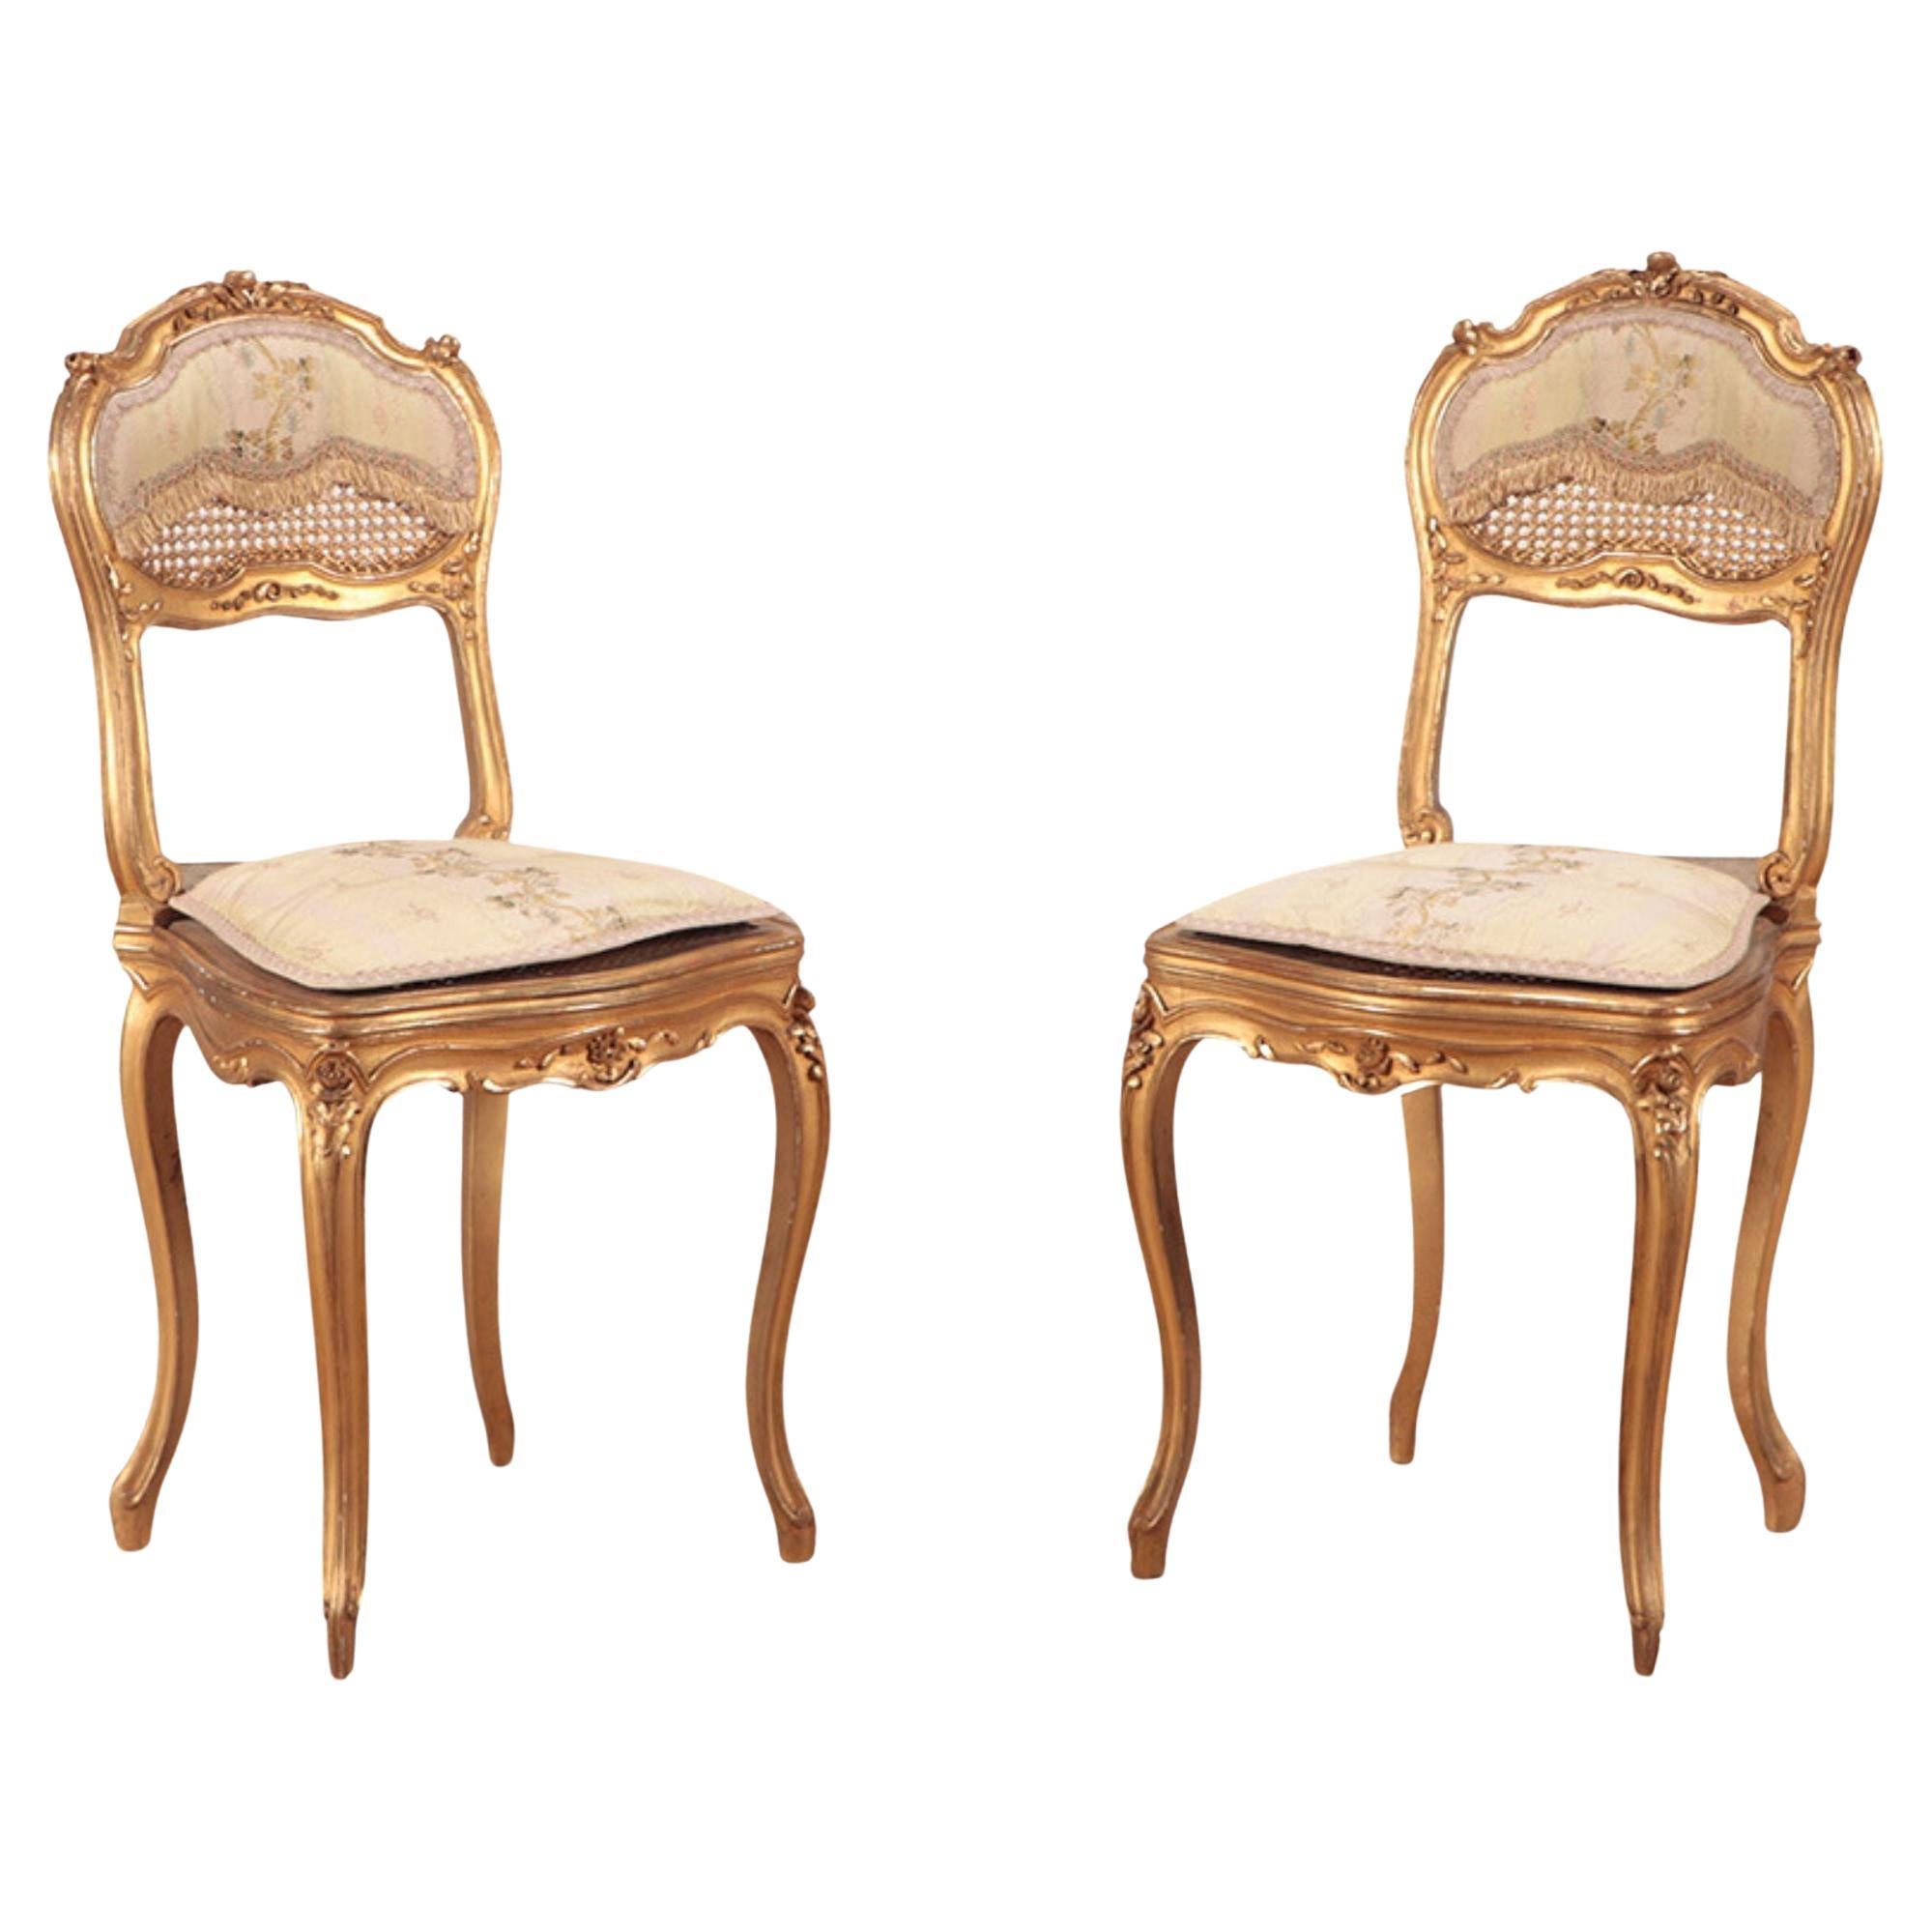 Paire de chaises d'appoint françaises de style Louis XV en bois doré et sculpté. Circa 1900